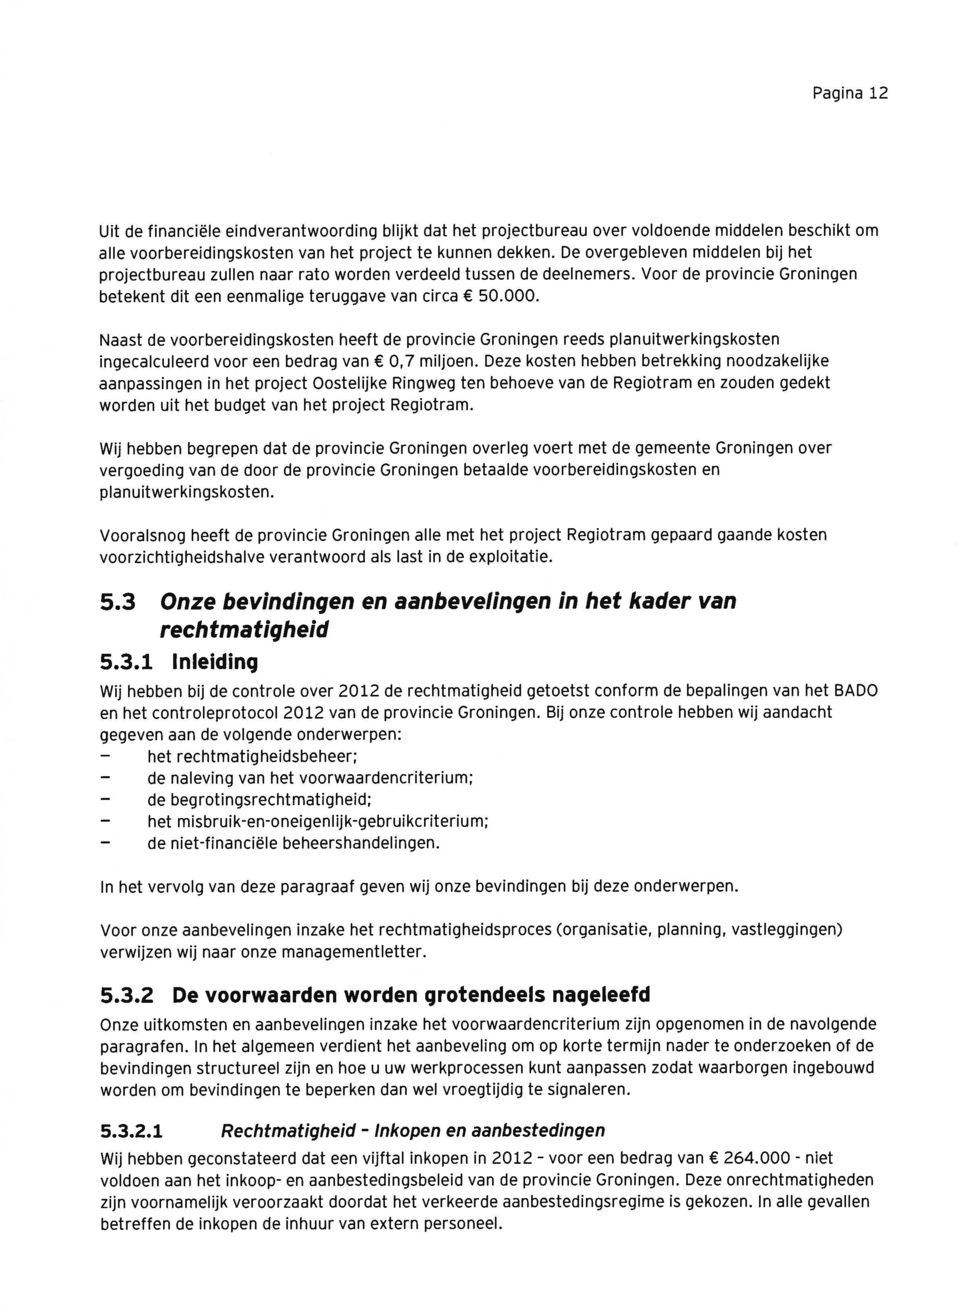 Naast de voorbereidingskosten heeft de provincie Groningen reeds planuitwerkingskosten ingecalculeerd voor een bedrag van 0,7 miljoen.